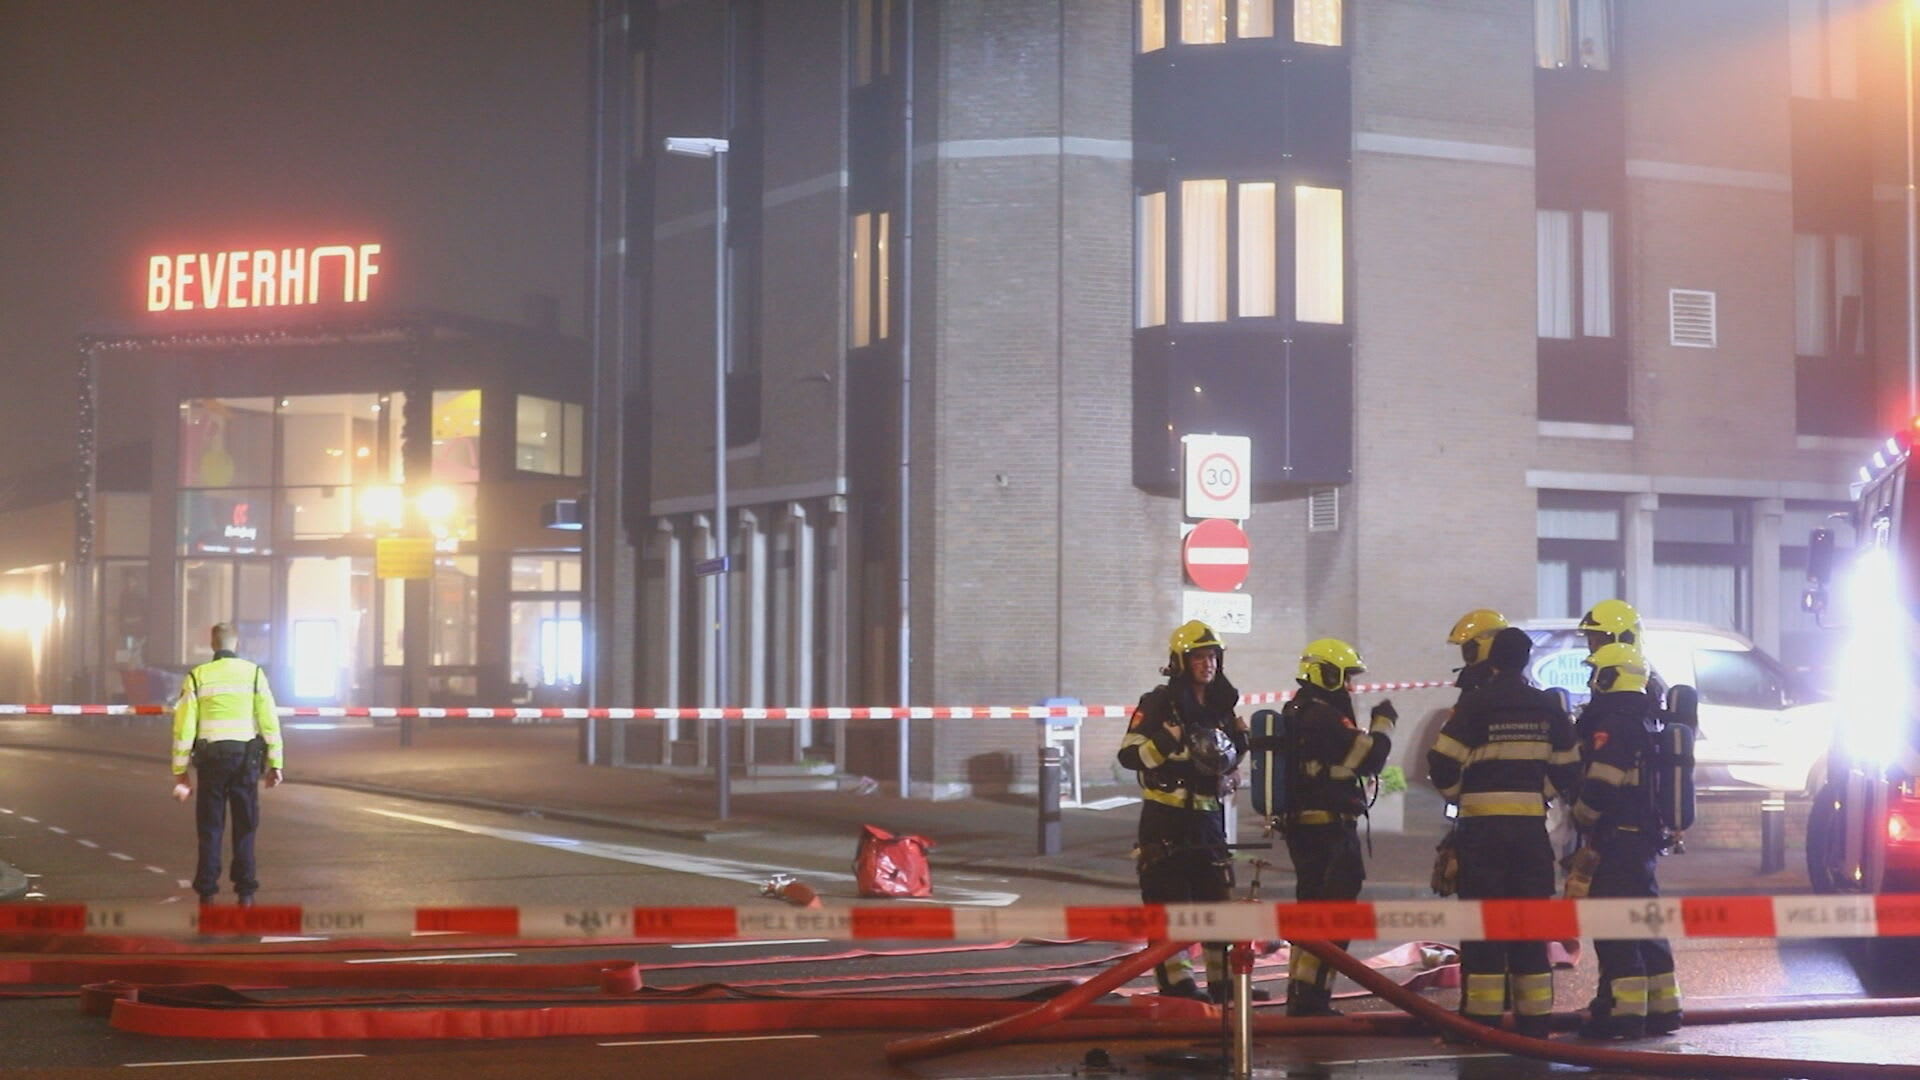 Poolse supermarkt in Beverwijk opnieuw getroffen door explosie